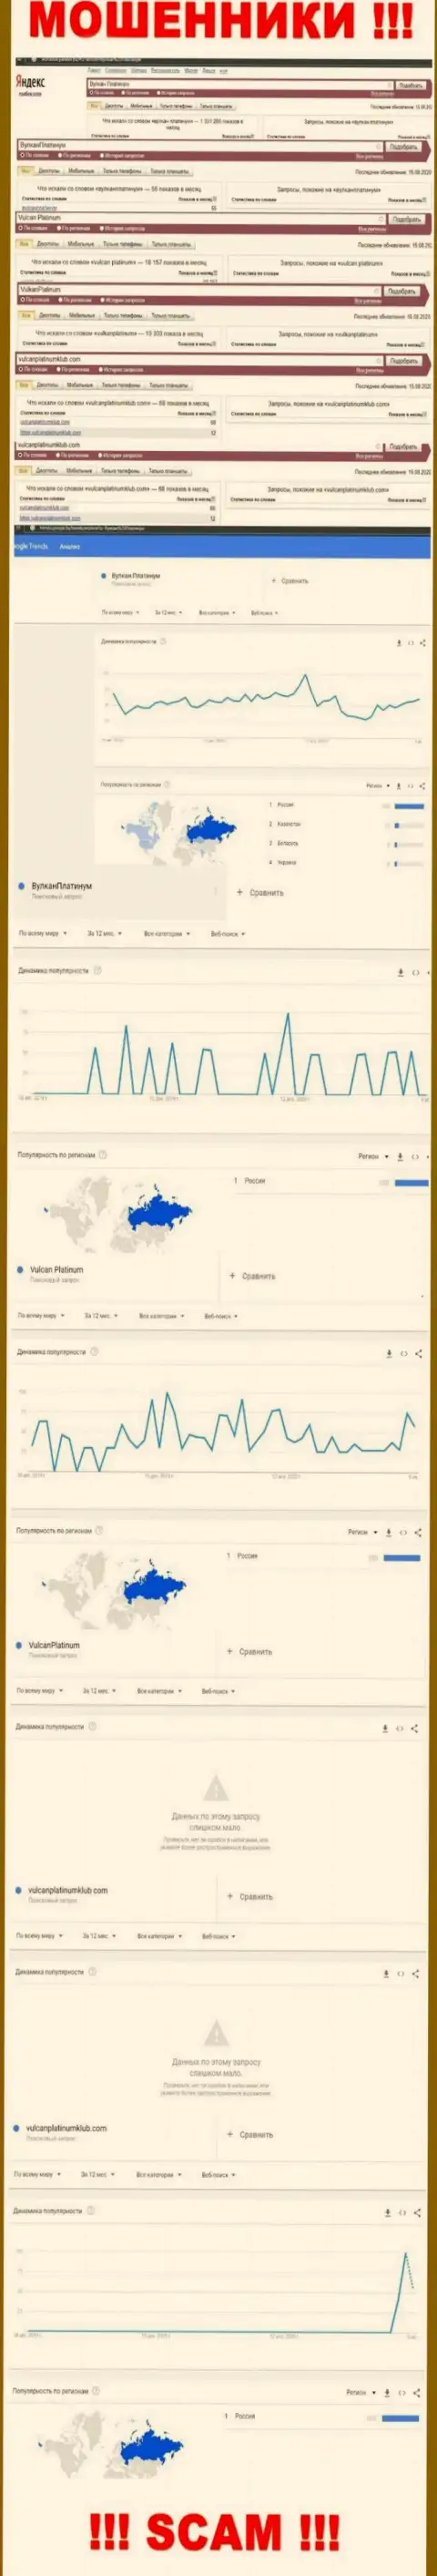 Статистические показатели поисков сведений о интернет-разводилах Вулкан Платинум